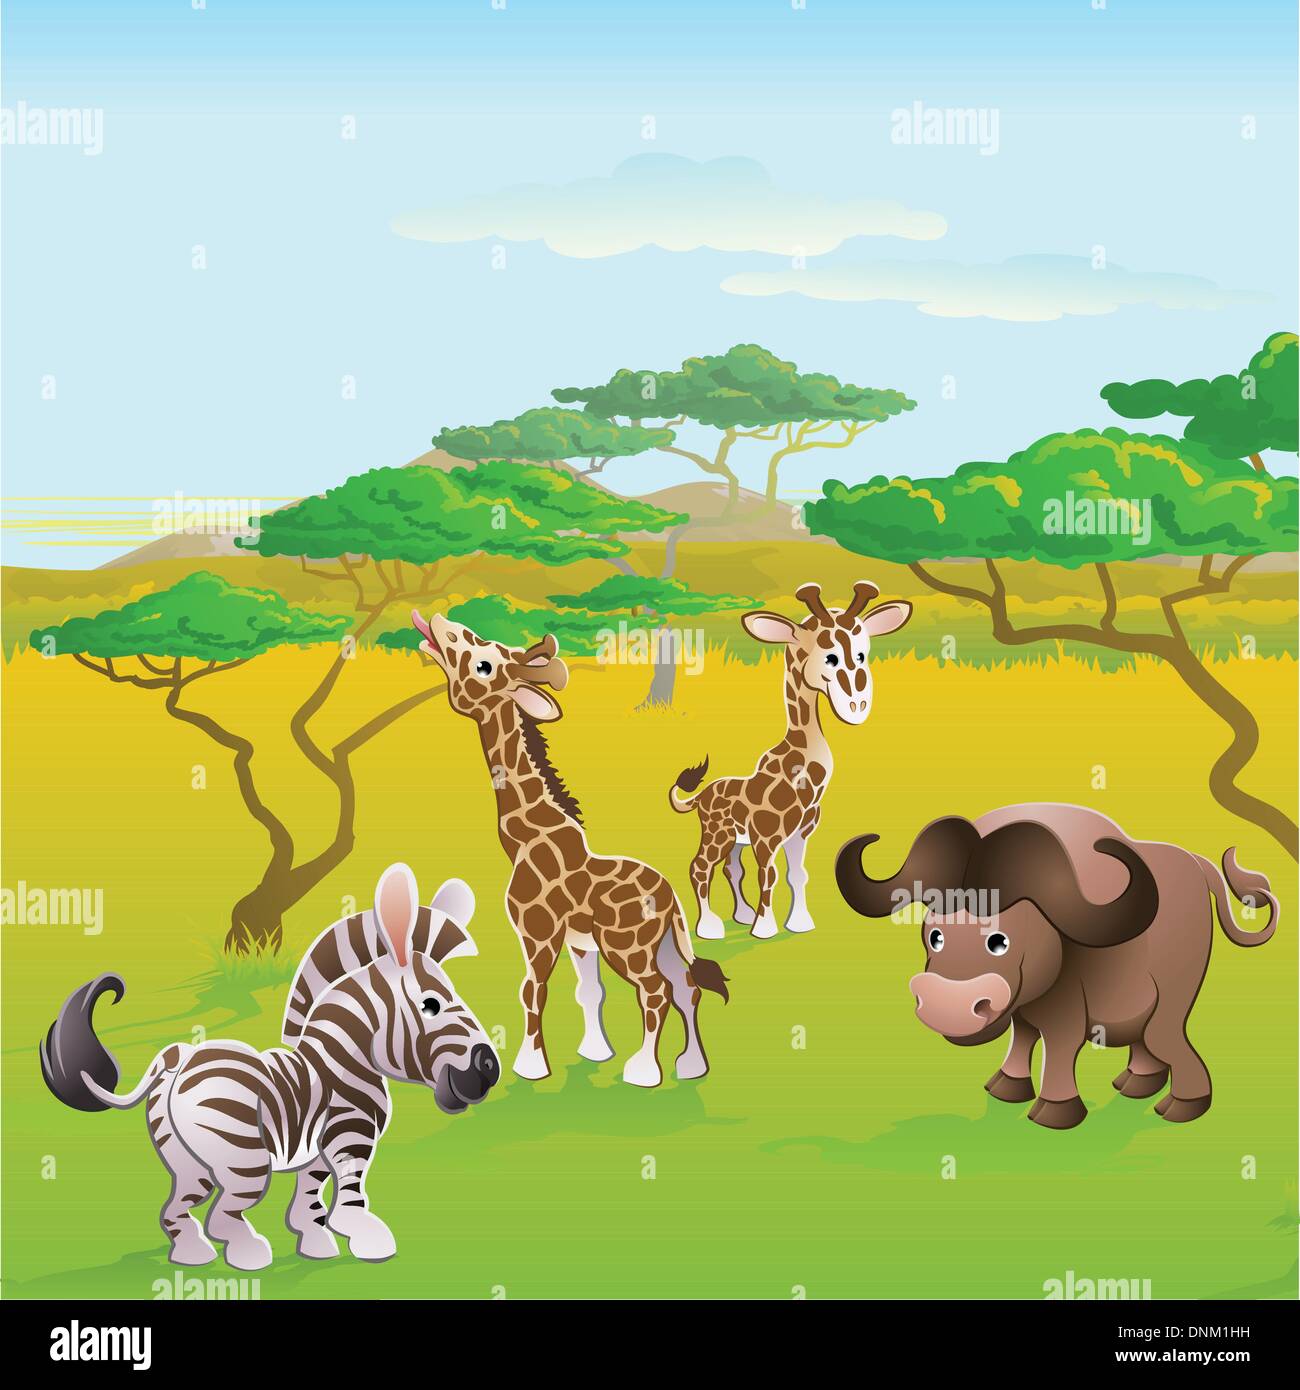 Niedliche afrikanische Safari Tier Cartoon Charaktere Szene. Reihe von drei Abbildungen, die separat genutzt werden können oder nebeneinander t Stock Vektor